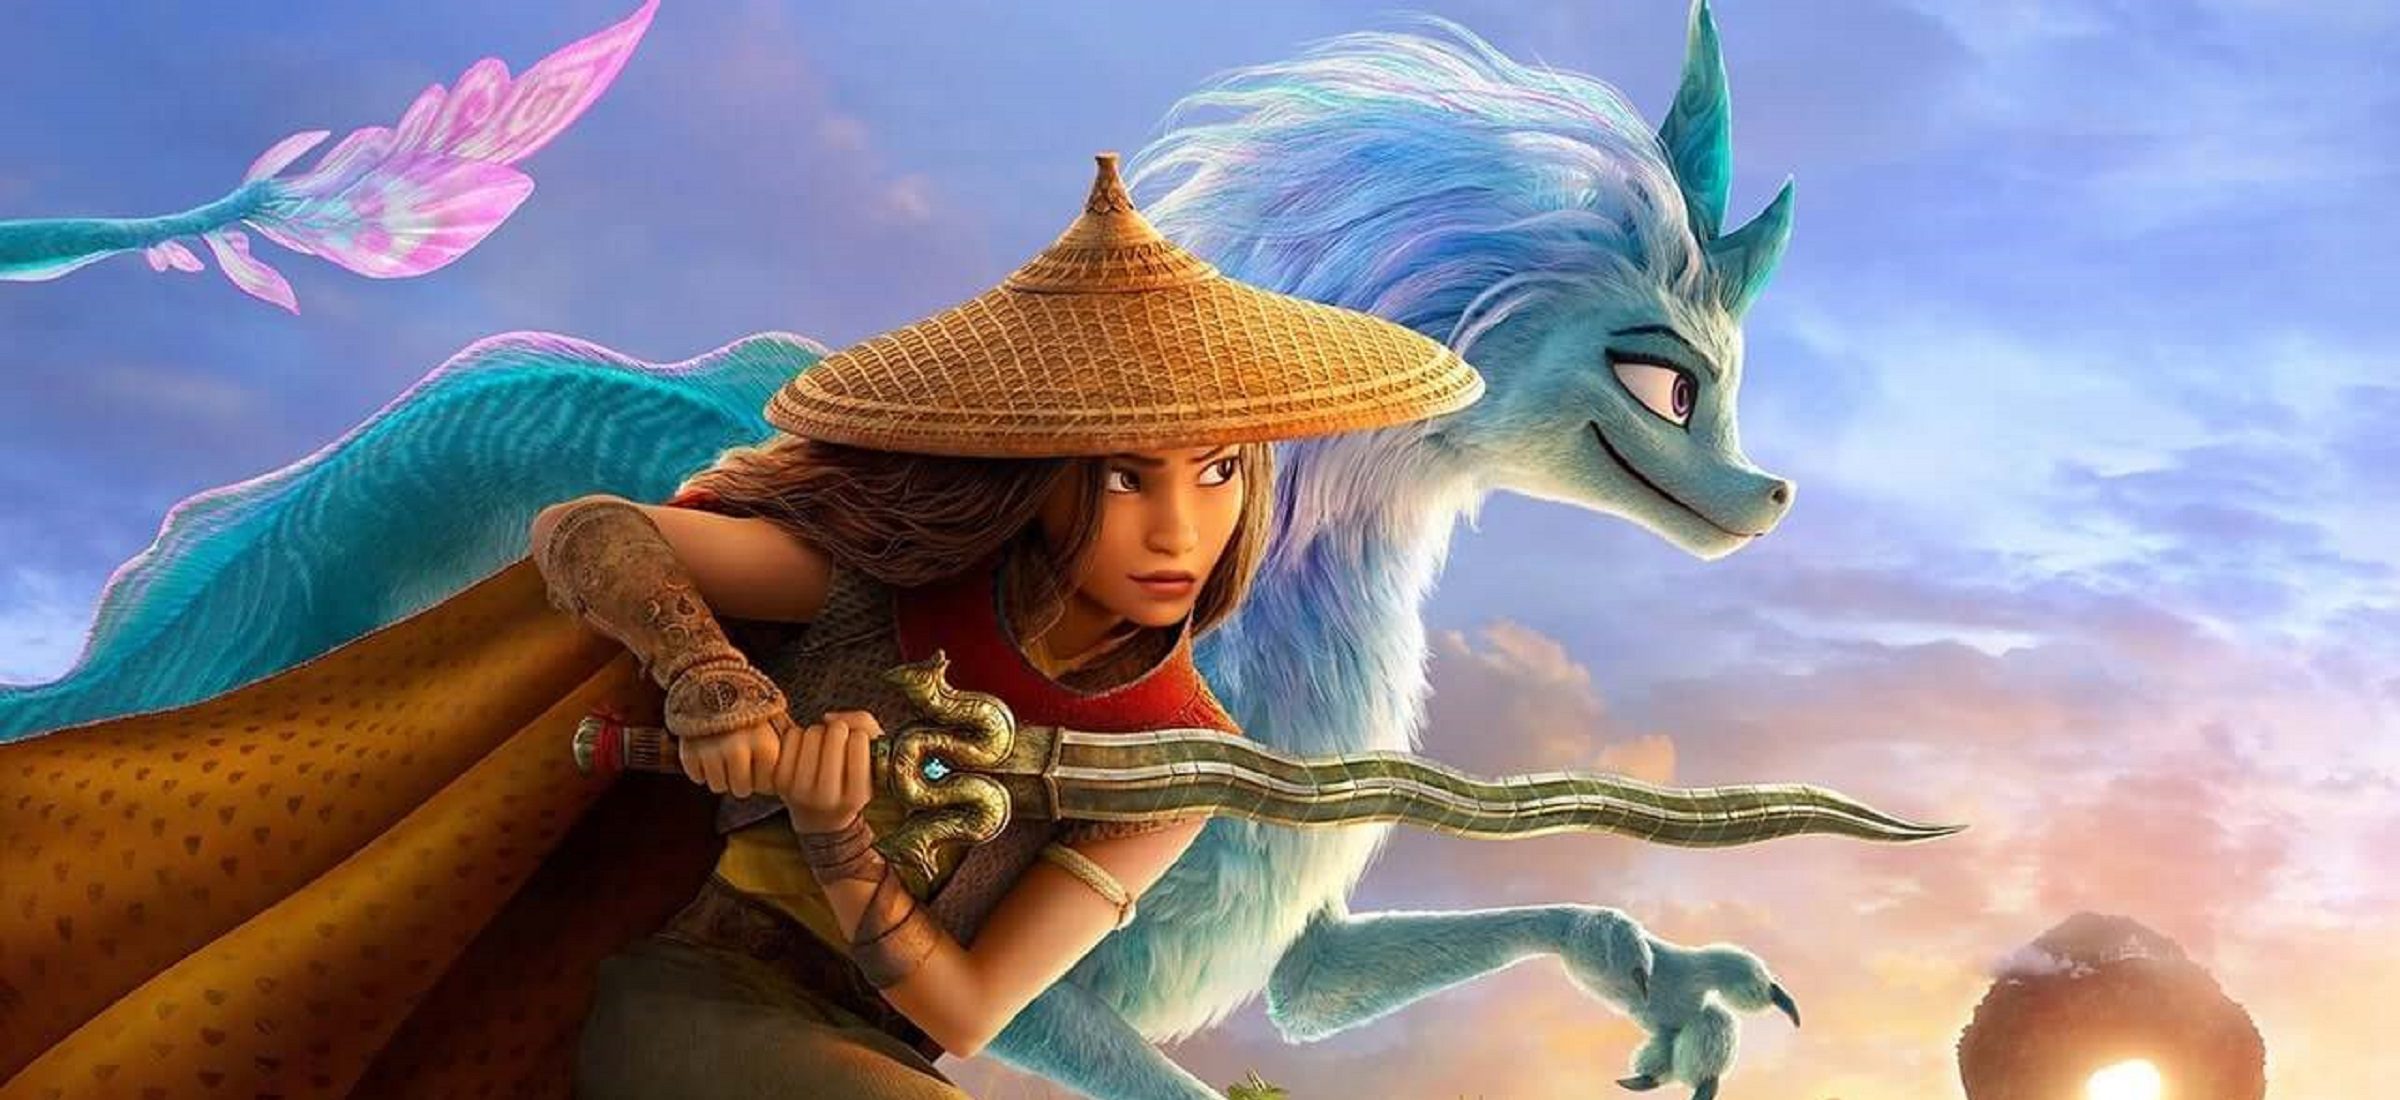 Vermisst du einen guten "Mulan"- und Disney-"König der Löwen"-Stil? Der Film "Ray and the Last Dragon" kehrt in großartigem Stil zu den Wurzeln des Studios zurück 7